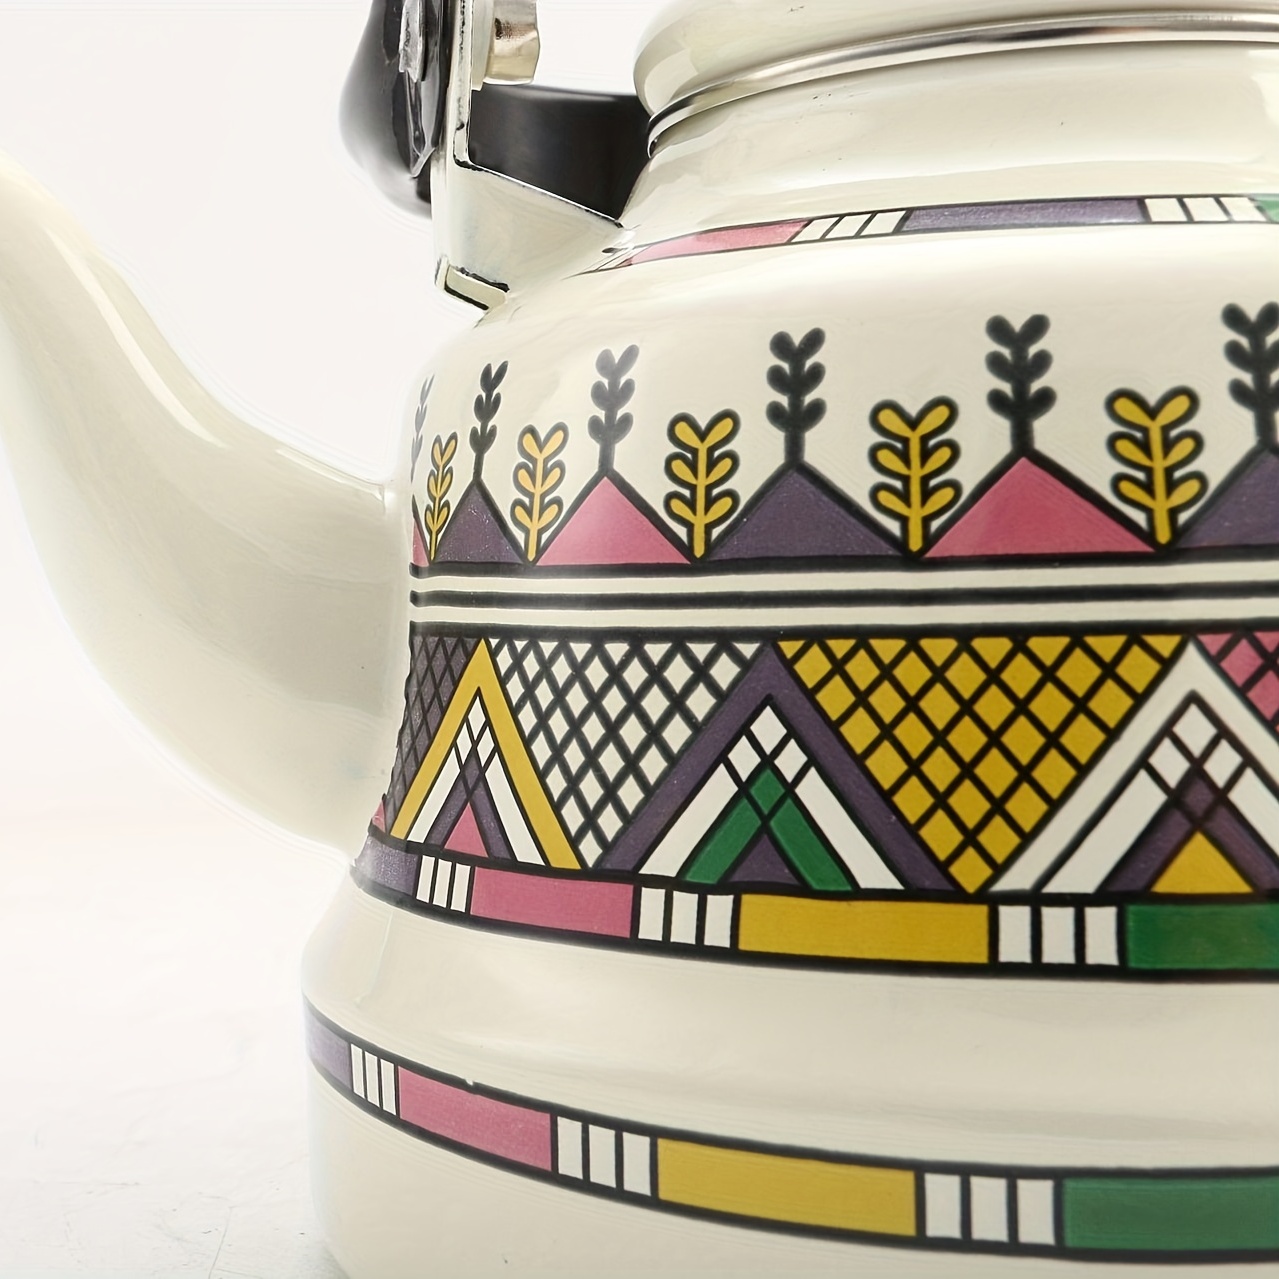 Stovetop Tea Kettles With Handle Vintage Enamel Boiling - Temu